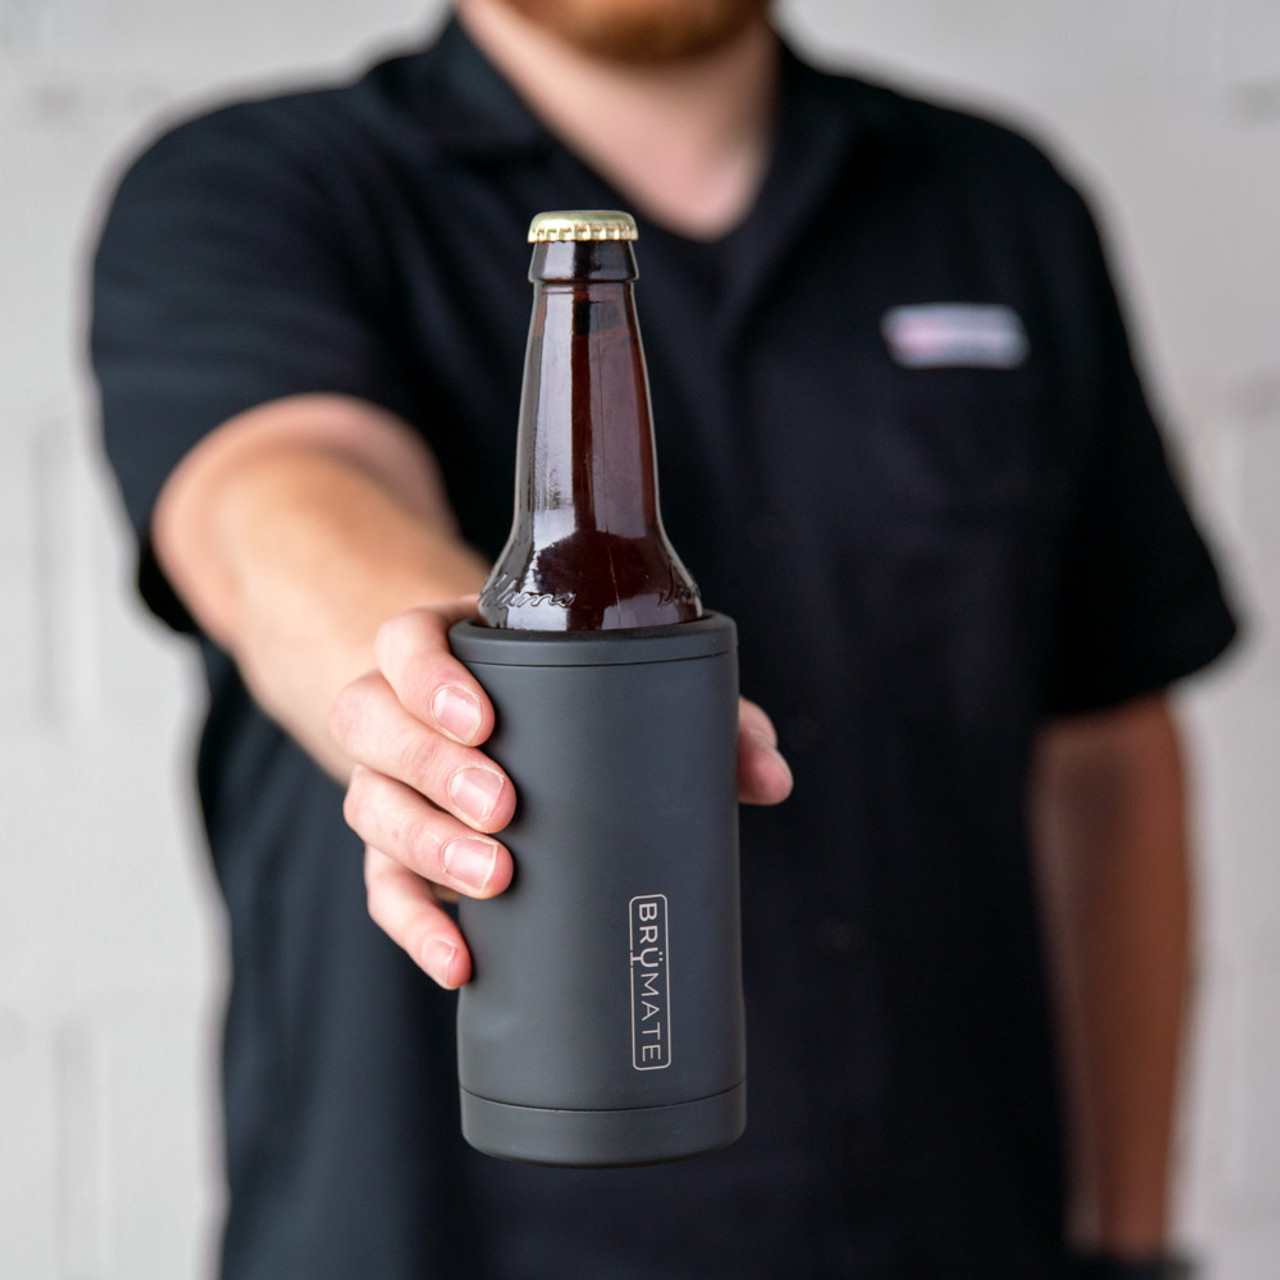 Brumate Hopsulator Bott'l Beer Bottle Holder, Clemson Orange, Insulated  Cooler